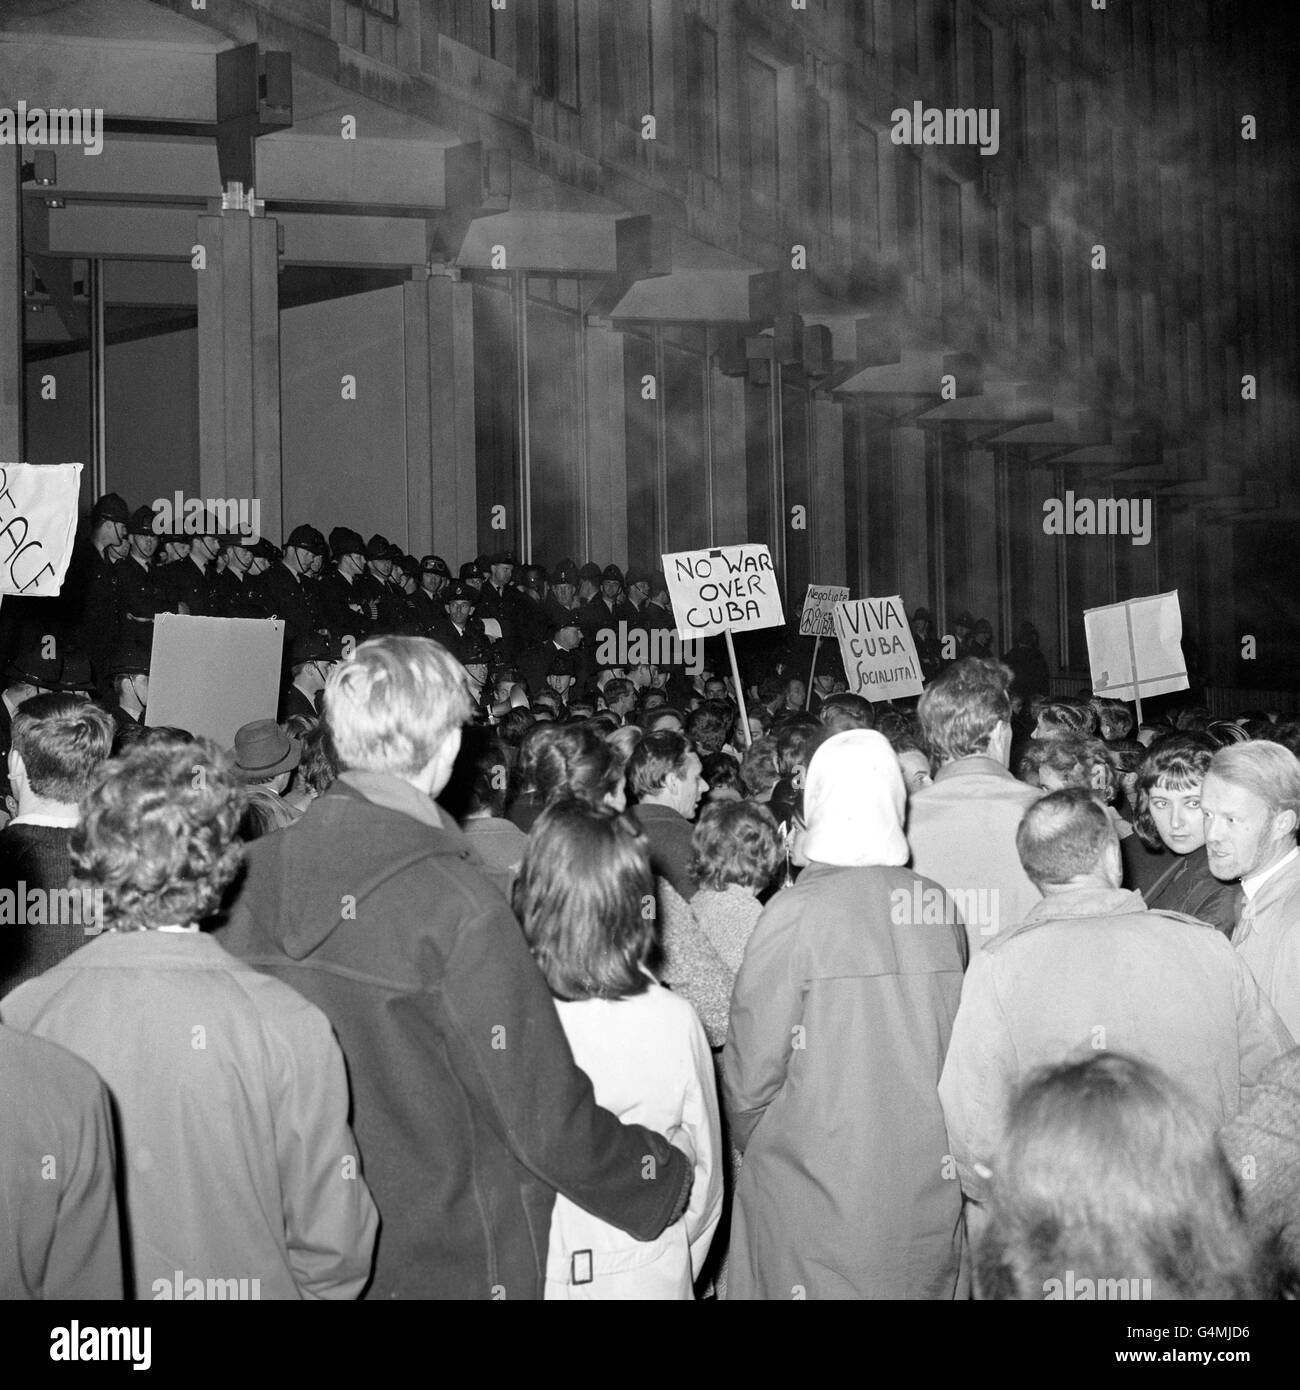 Des pancartes portant les mots « No War Over Cuba » sortent d'une foule de manifestants qui se dressent contre un cordon de police devant l'ambassade des États-Unis à Grosvenor Square, Londres. Les manifestants, estimés à 2,000 000, protestaient contre le blocus américain de Cuba. Banque D'Images